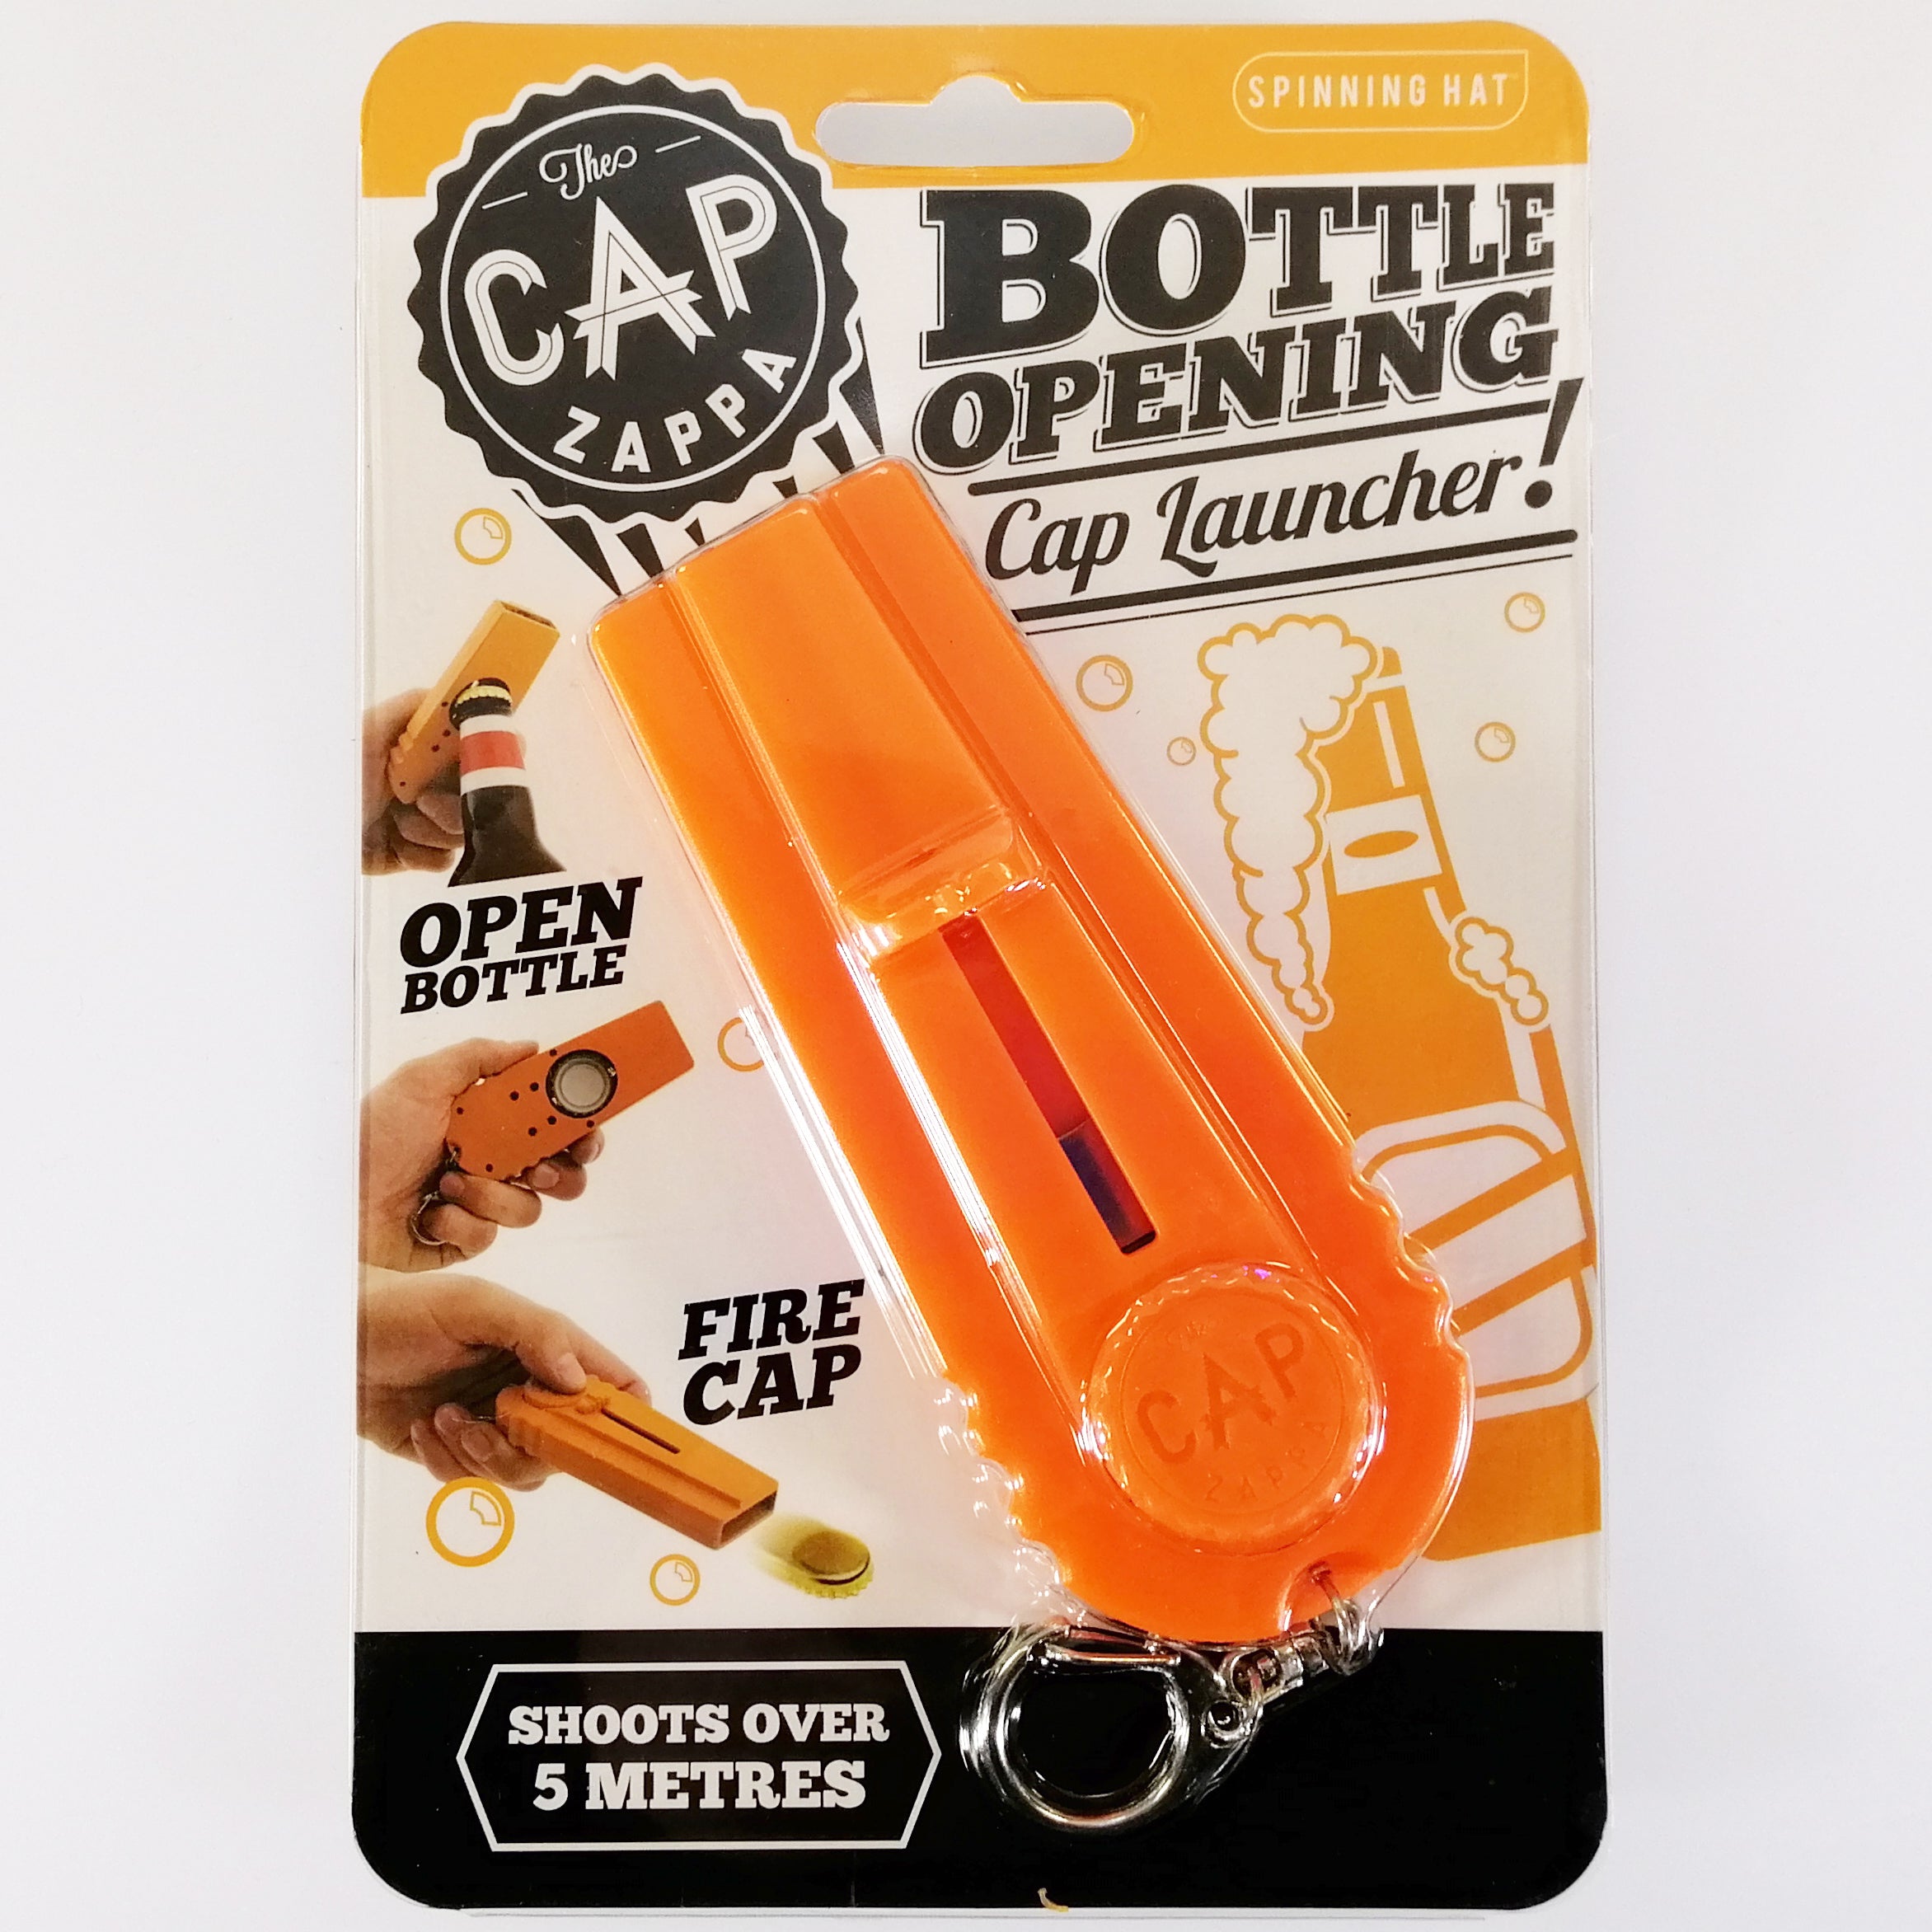 The Cap Zappa' Bottle Opening Cap Launcher